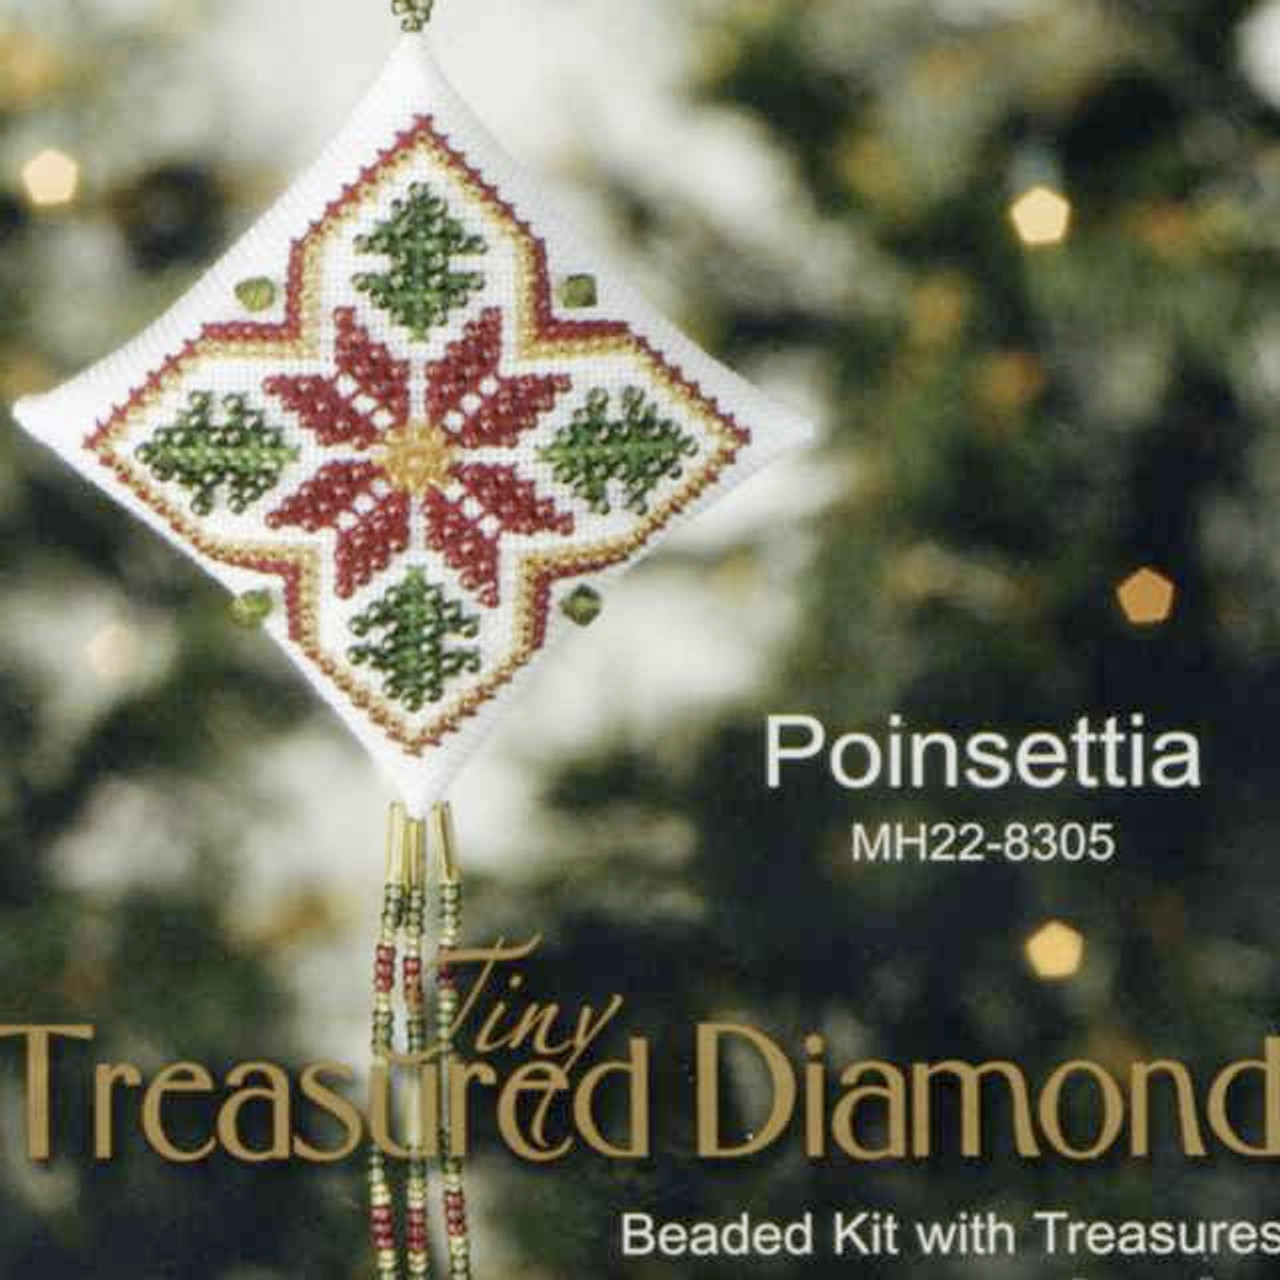 Poinsettia Tiny Treasured Diamond Beaded Ornament Kit Mill Hill 2008